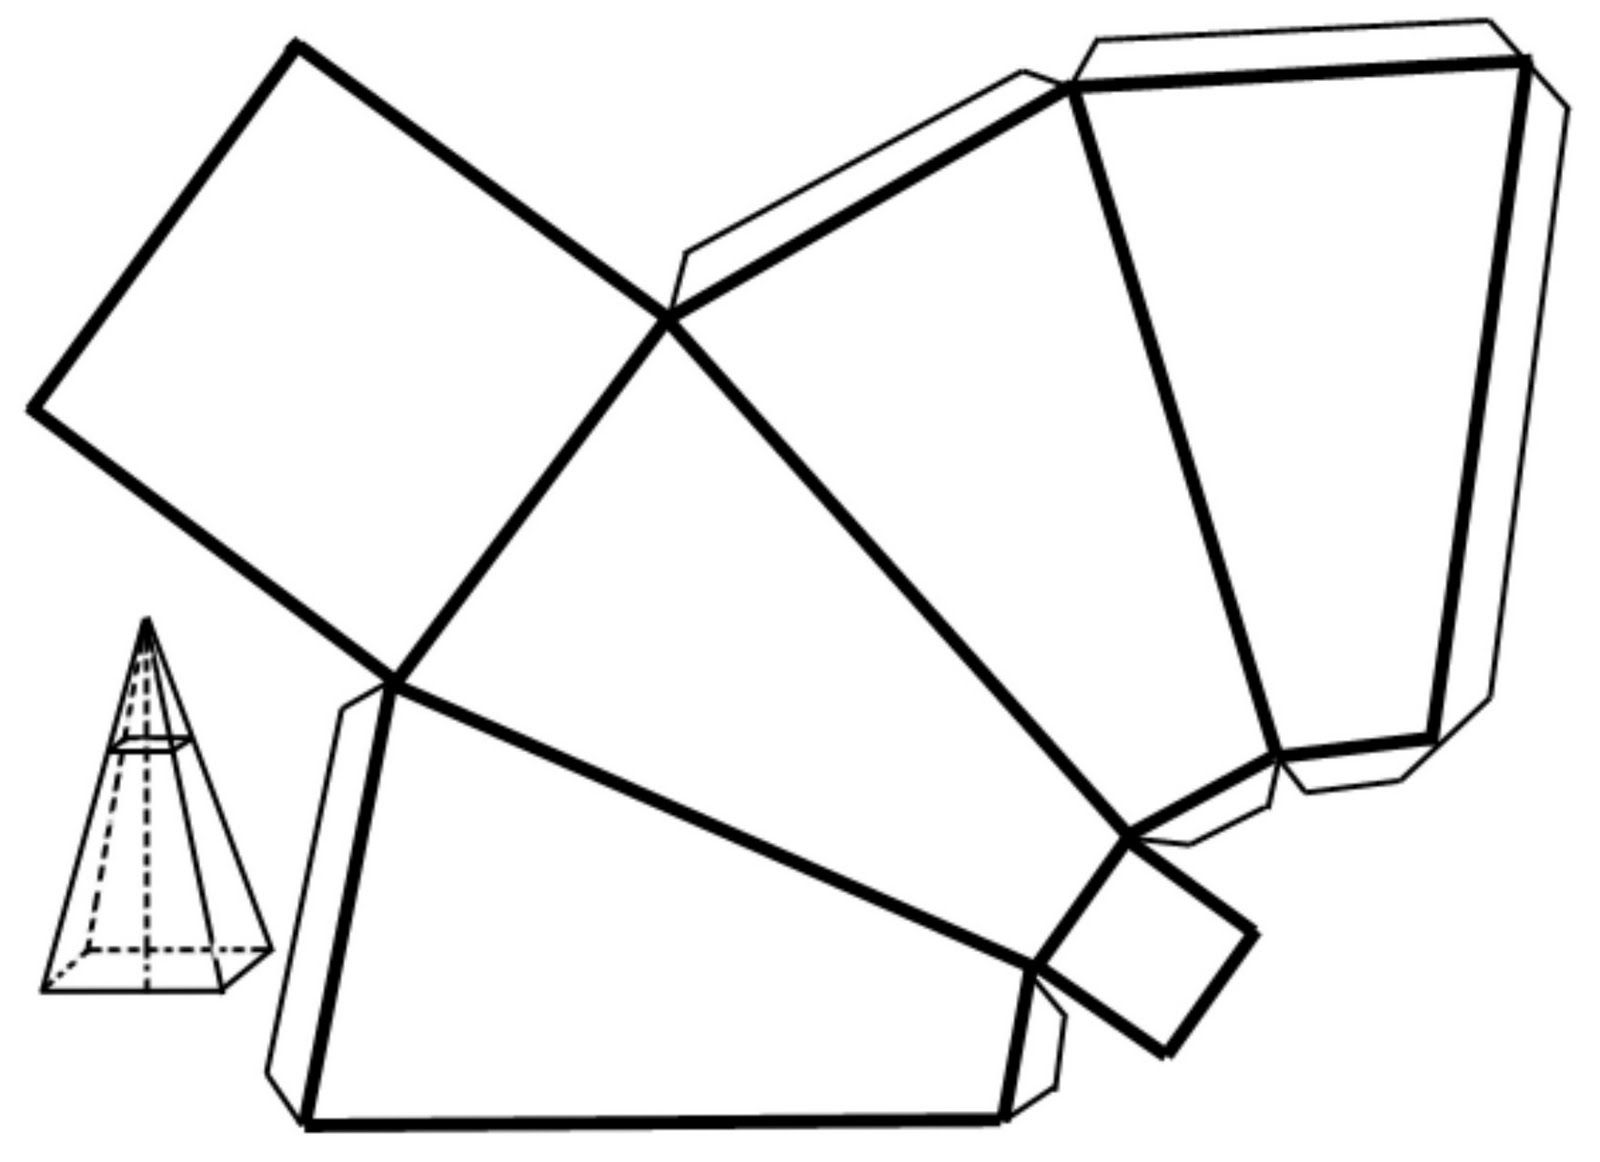 Развертка правильной четырехугольной пирамиды